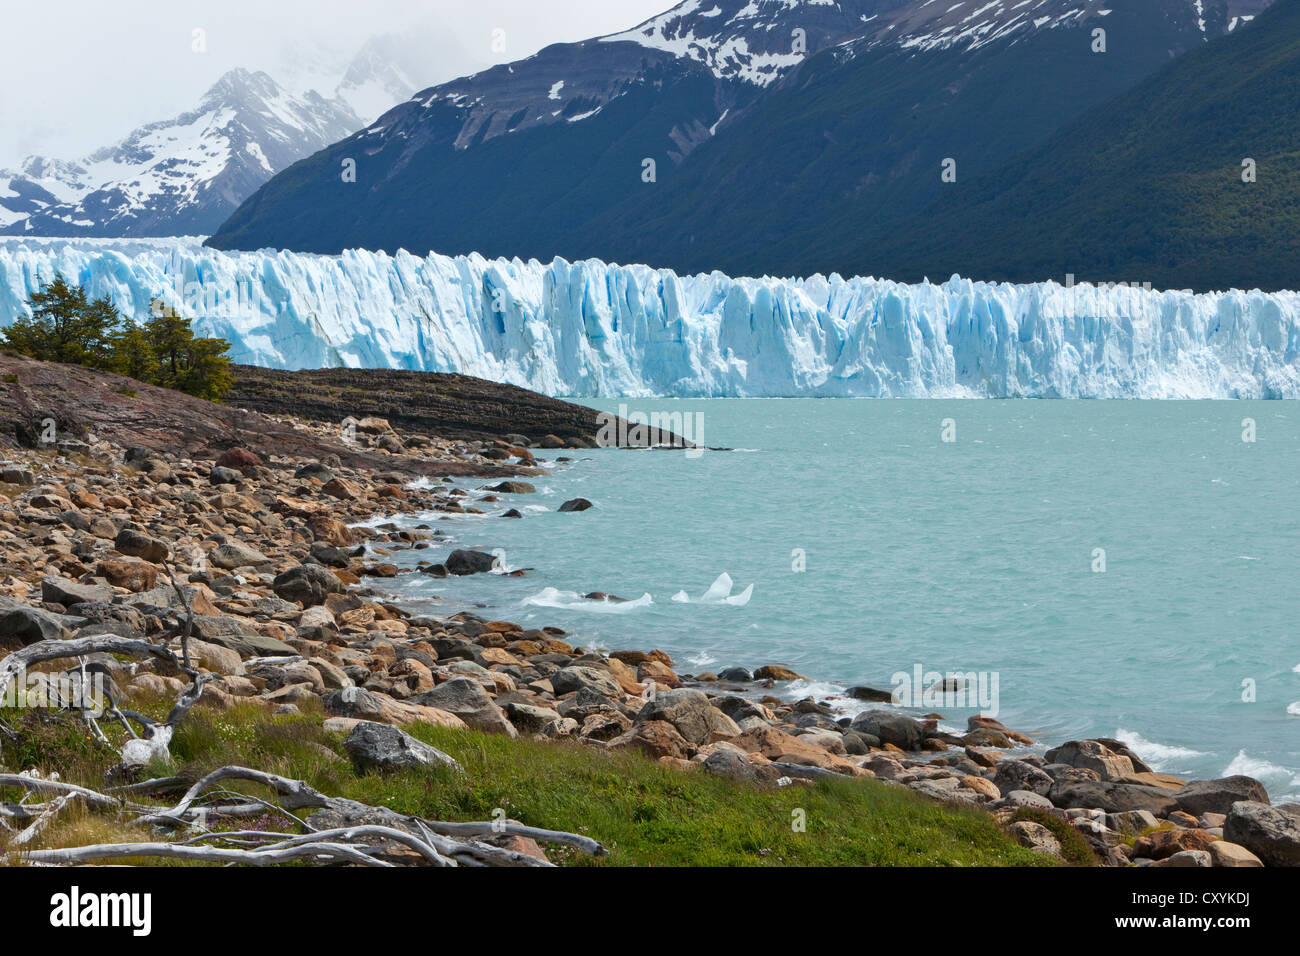 Gletschereis aus der Perito-Moreno-Gletscher am See der Lago Argentino, Region Santa Cruz, Patagonien, Argentinien, Südamerika Stockfoto